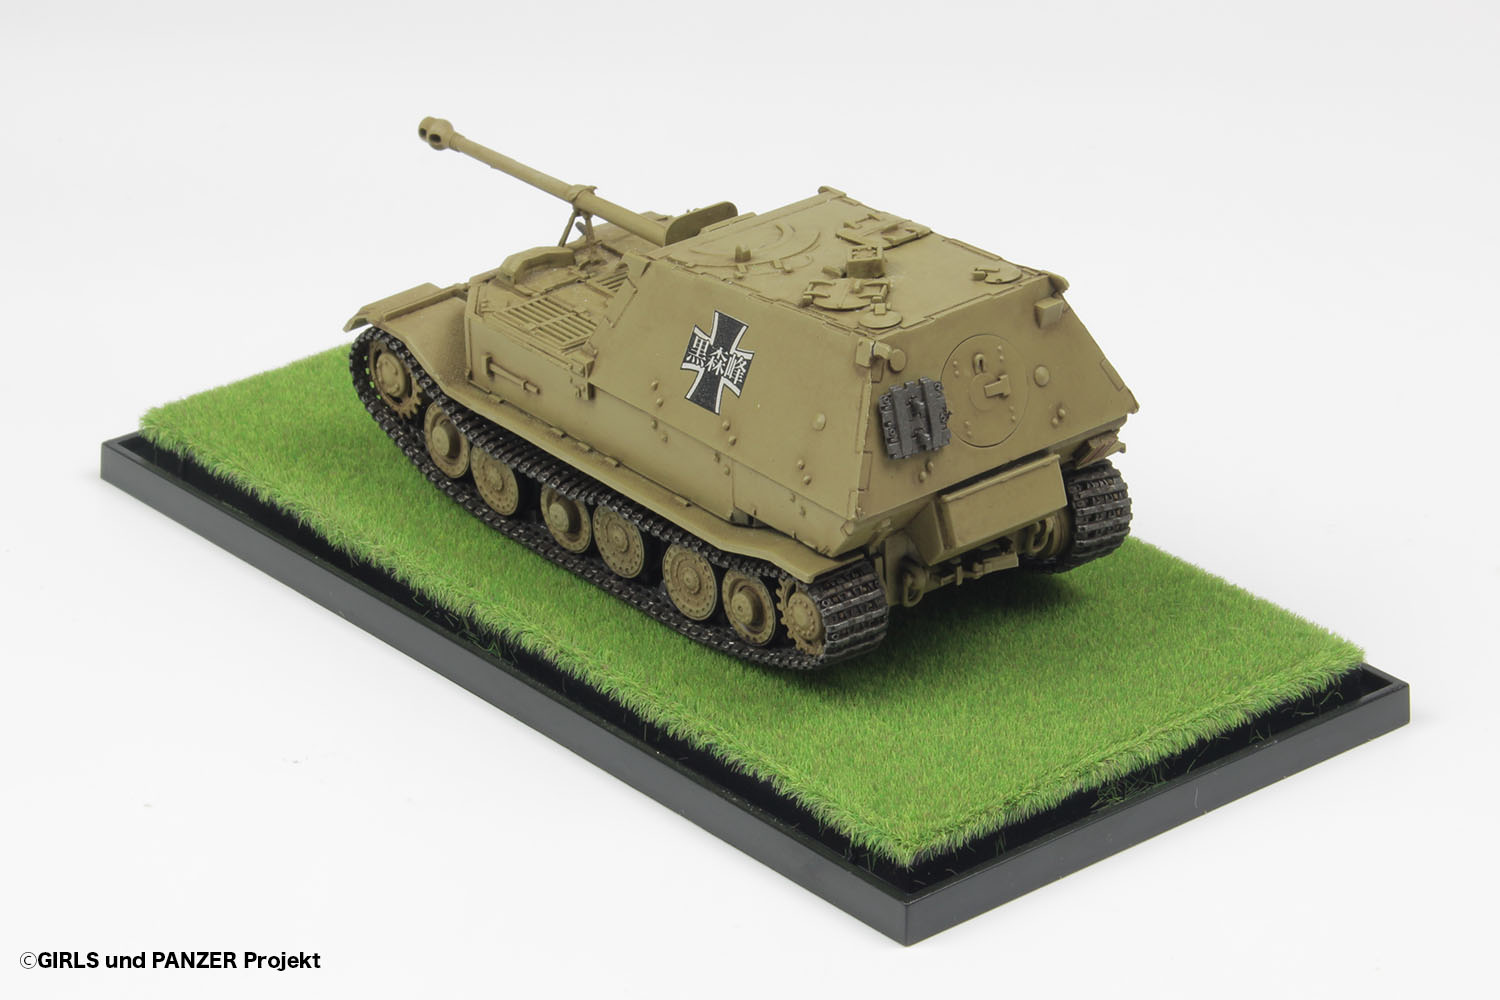 GIRLS und PANZER 1/72 Panzerjager Tiger "Elefant" Kuromorimine